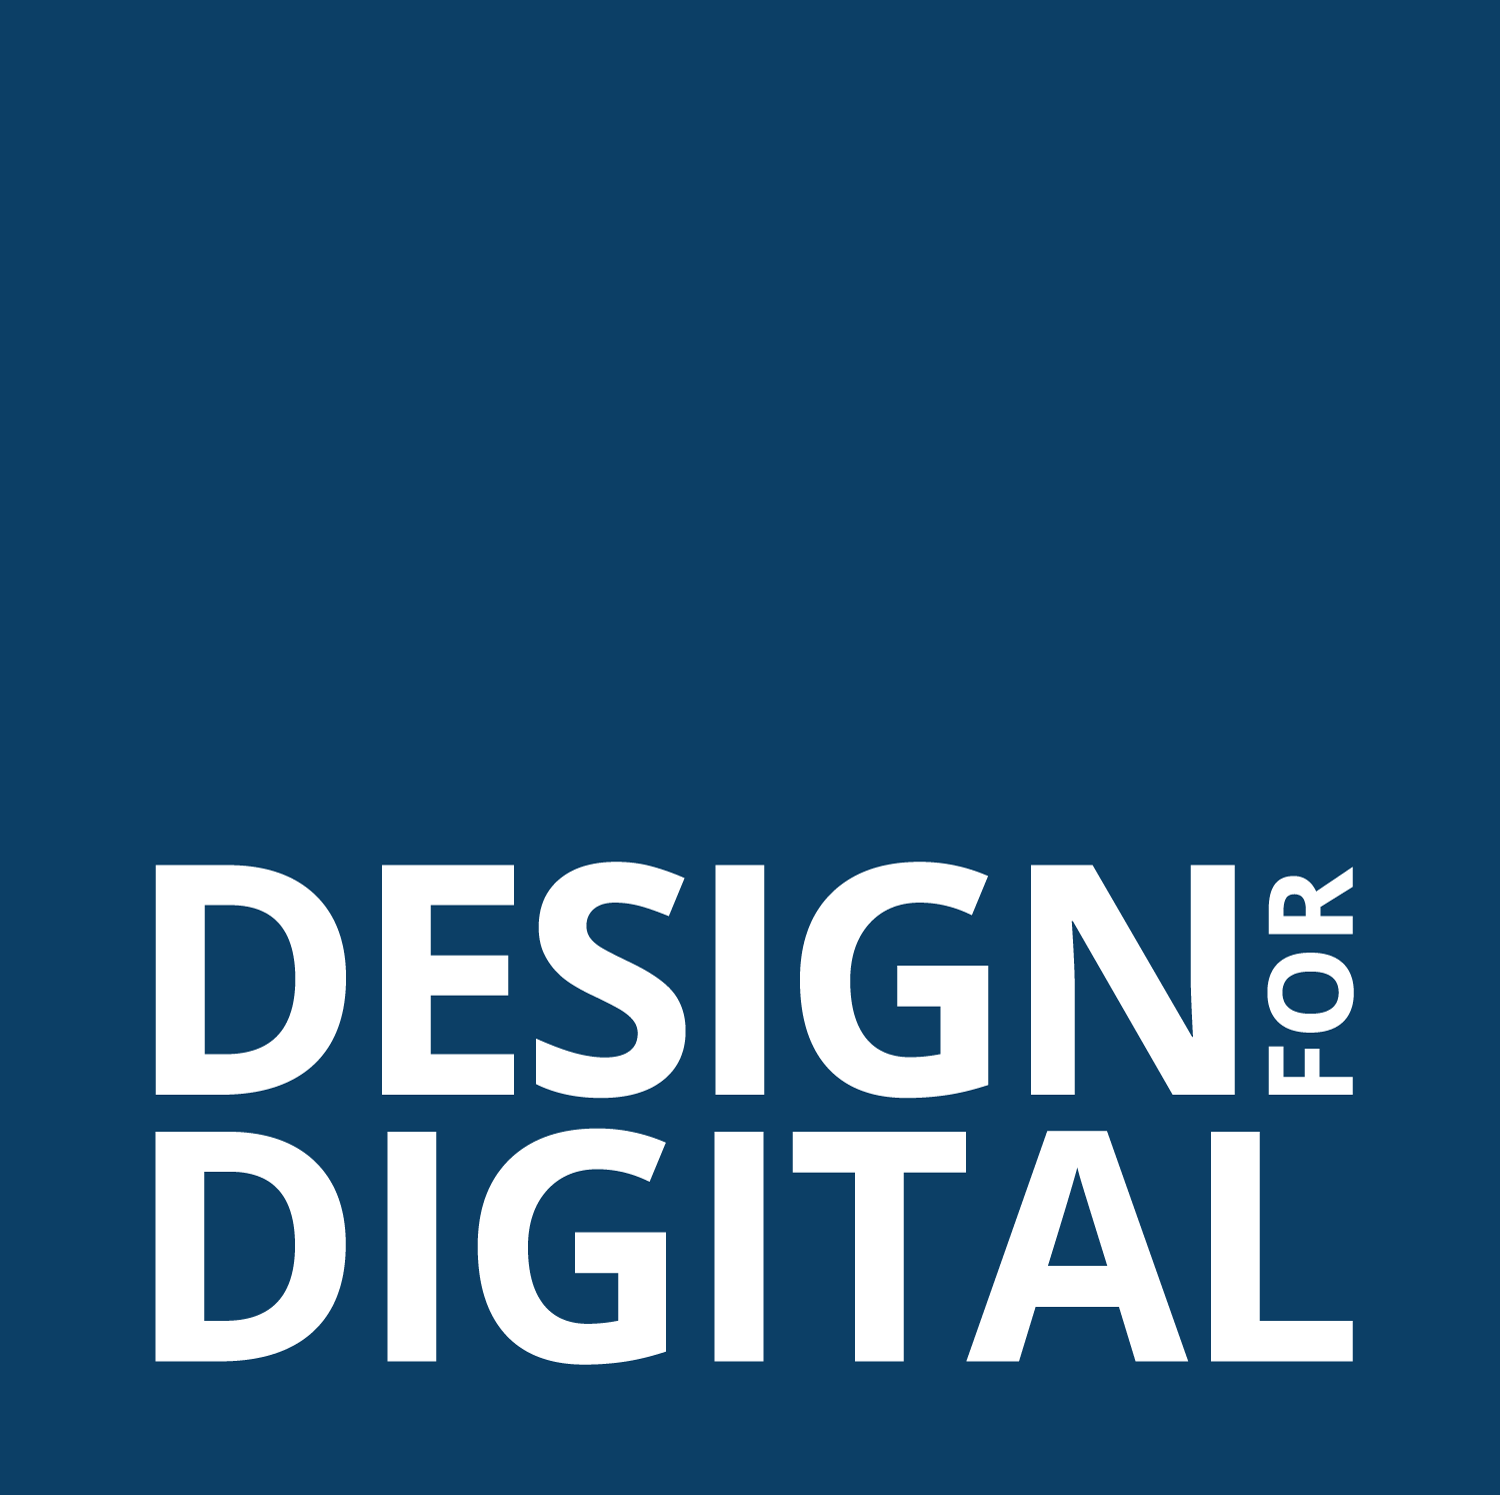 Design for Digital